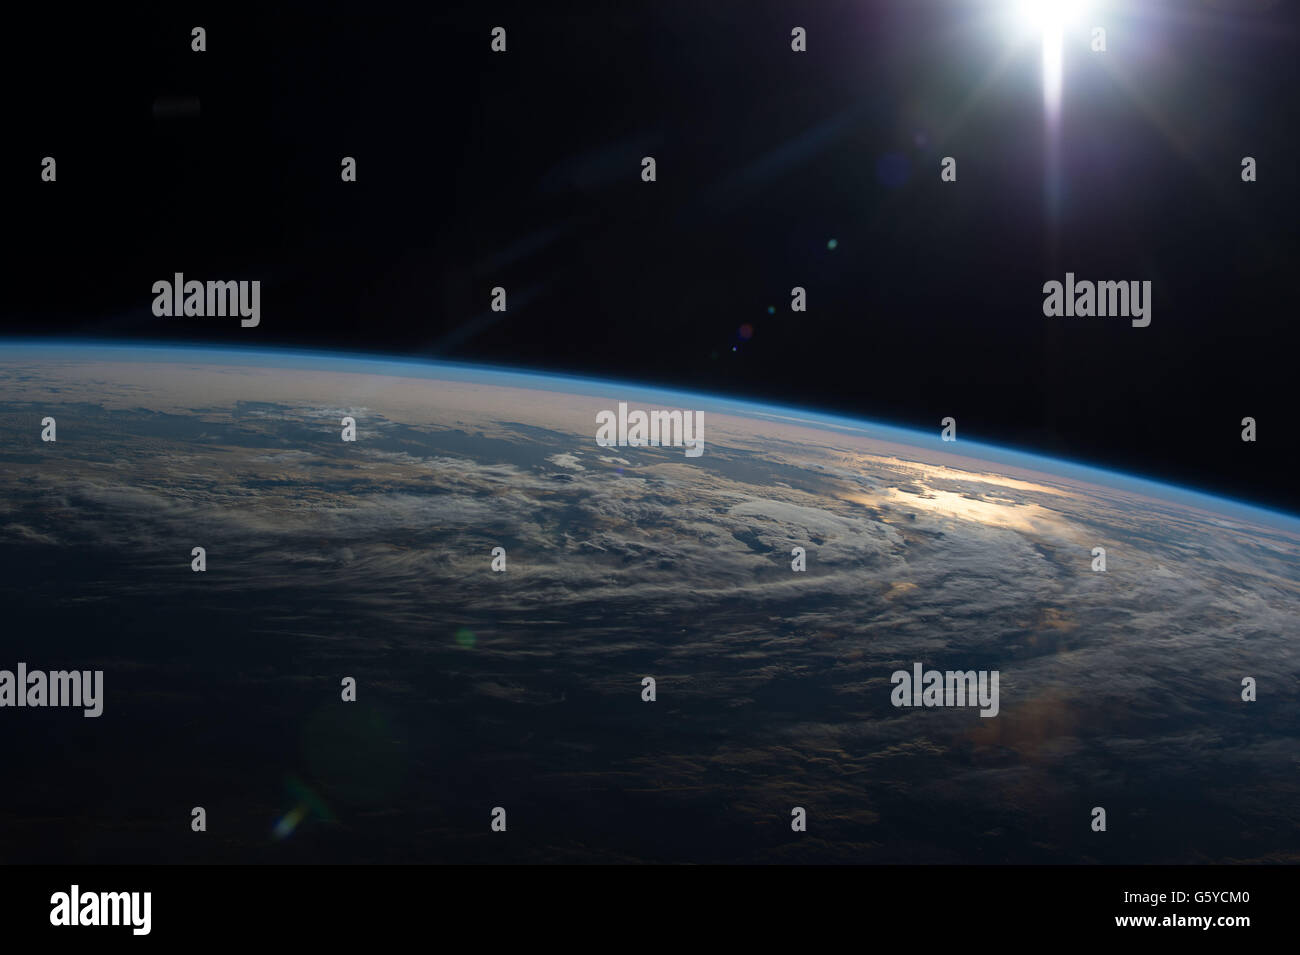 L'observation de la Terre La Station spatiale internationale image capturée par les membres de l'Expédition 47 montrant le soleil qui se reflète sur l'océan et l'atmosphère de la mince couche de protection de la Terre depuis l'espace. Banque D'Images